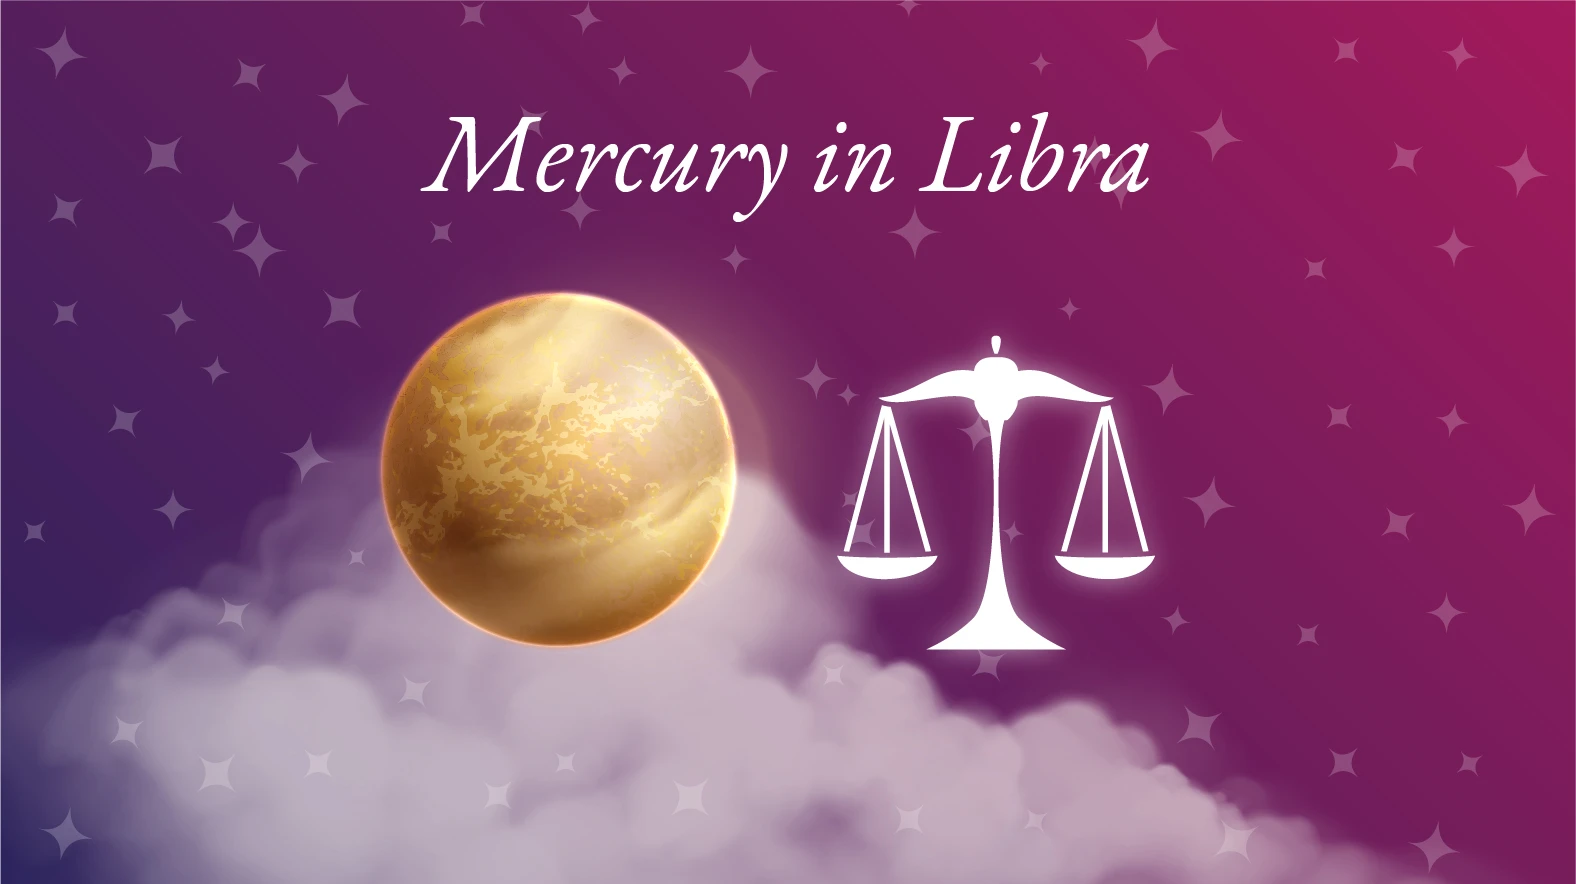 Mercury in Libra